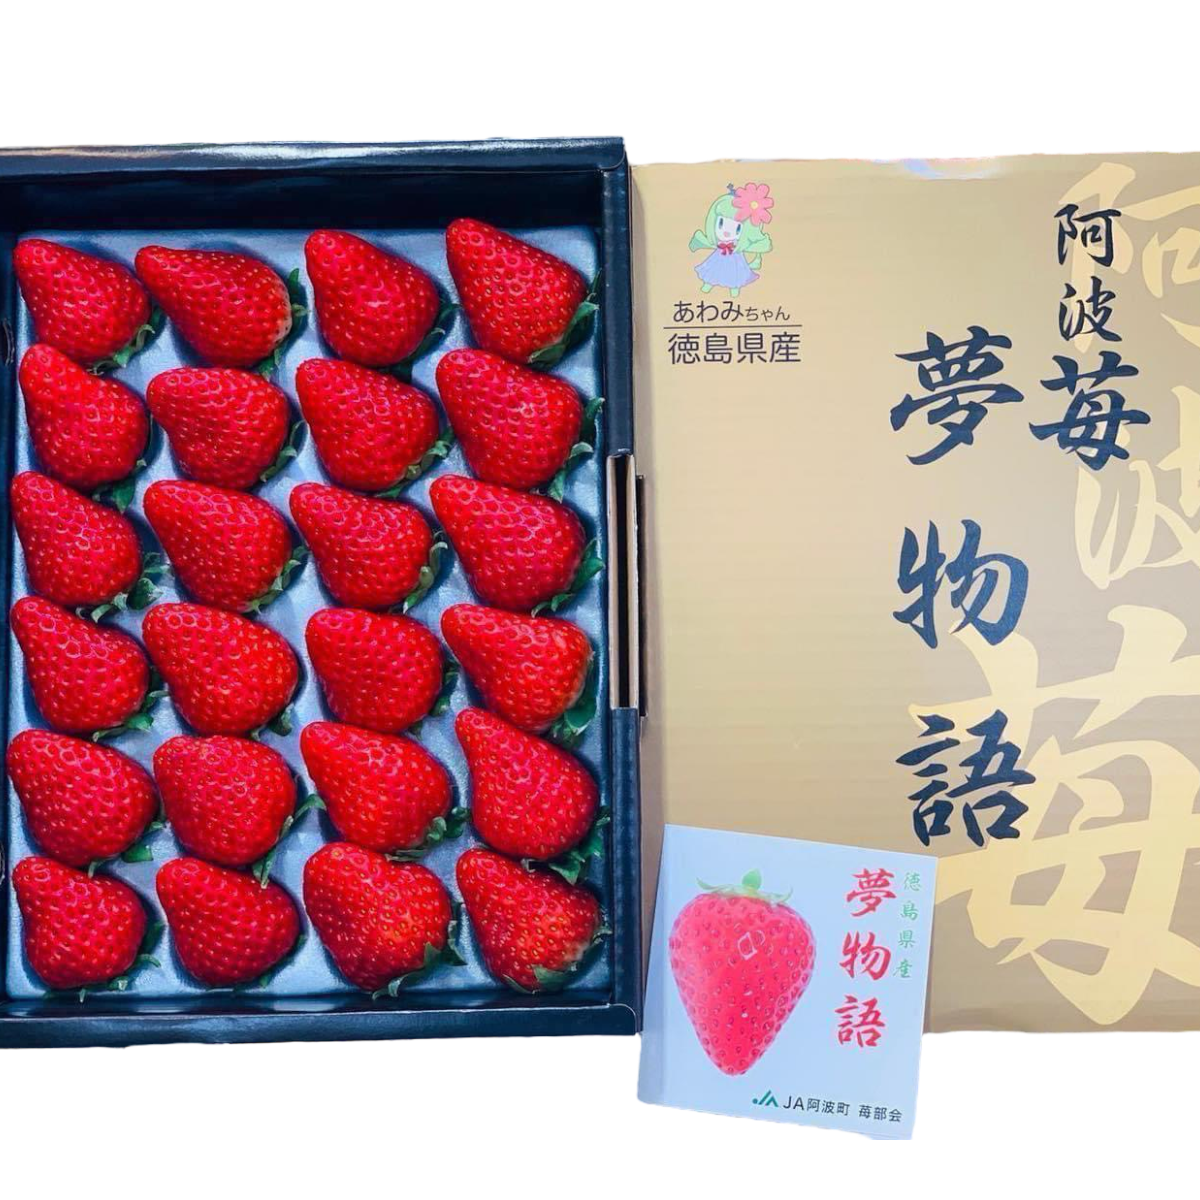 日本 德島 阿波莓夢物語士多啤梨禮盒